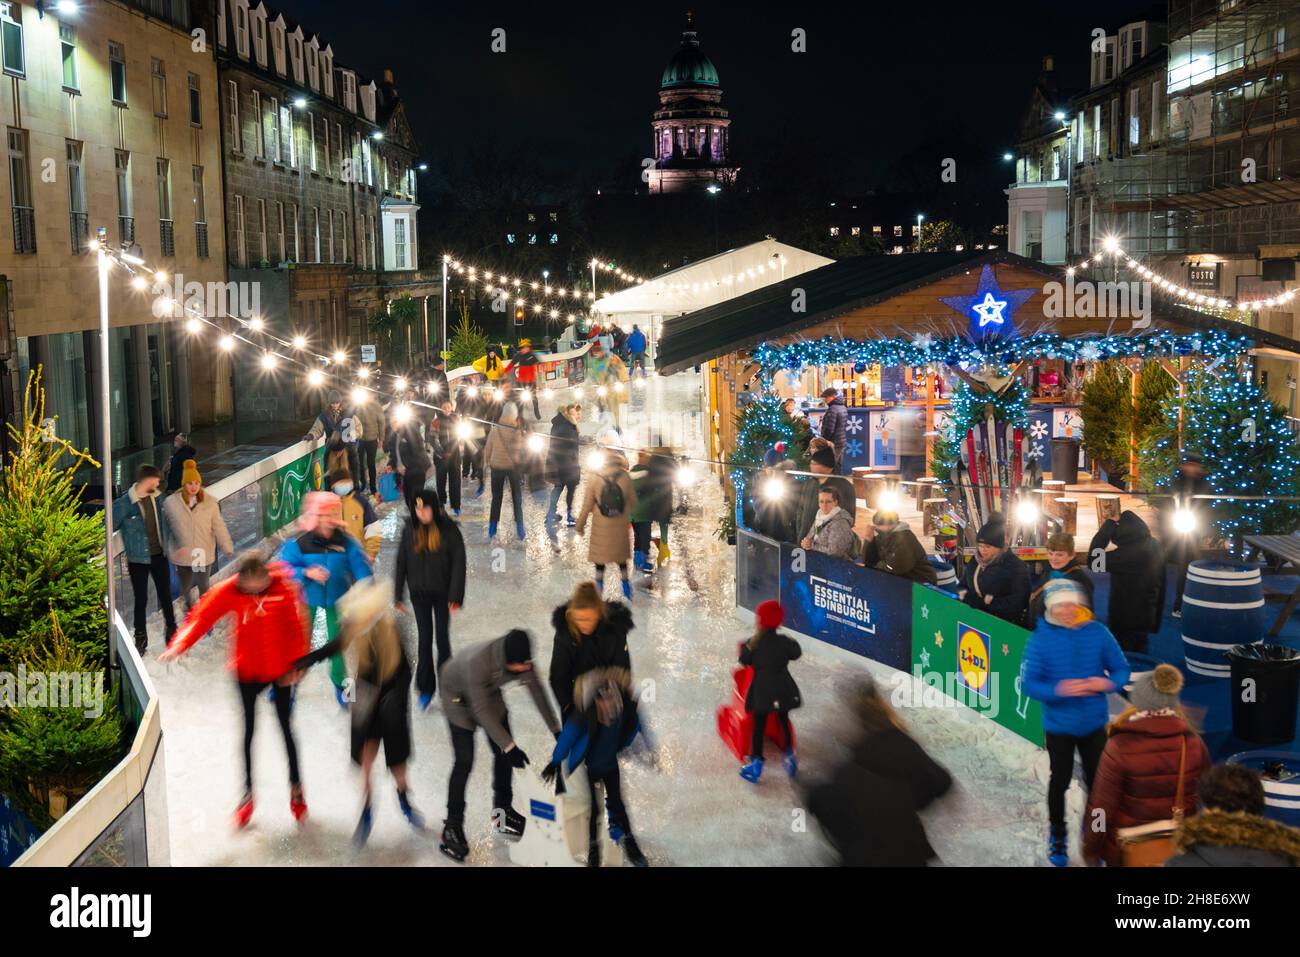 Edinburgh, Schottland, Großbritannien. 29th. November 2021. Weihnachten Eisläufer auf Lidl-on-Ice Eisbahn auf der George Street in Edinburgh gebaut. Diese Attraktion ist Teil der berühmten Weihnachtsfeierlichkeiten in Edinburgh. Iain Masterton/Alamy Live News. Stockfoto